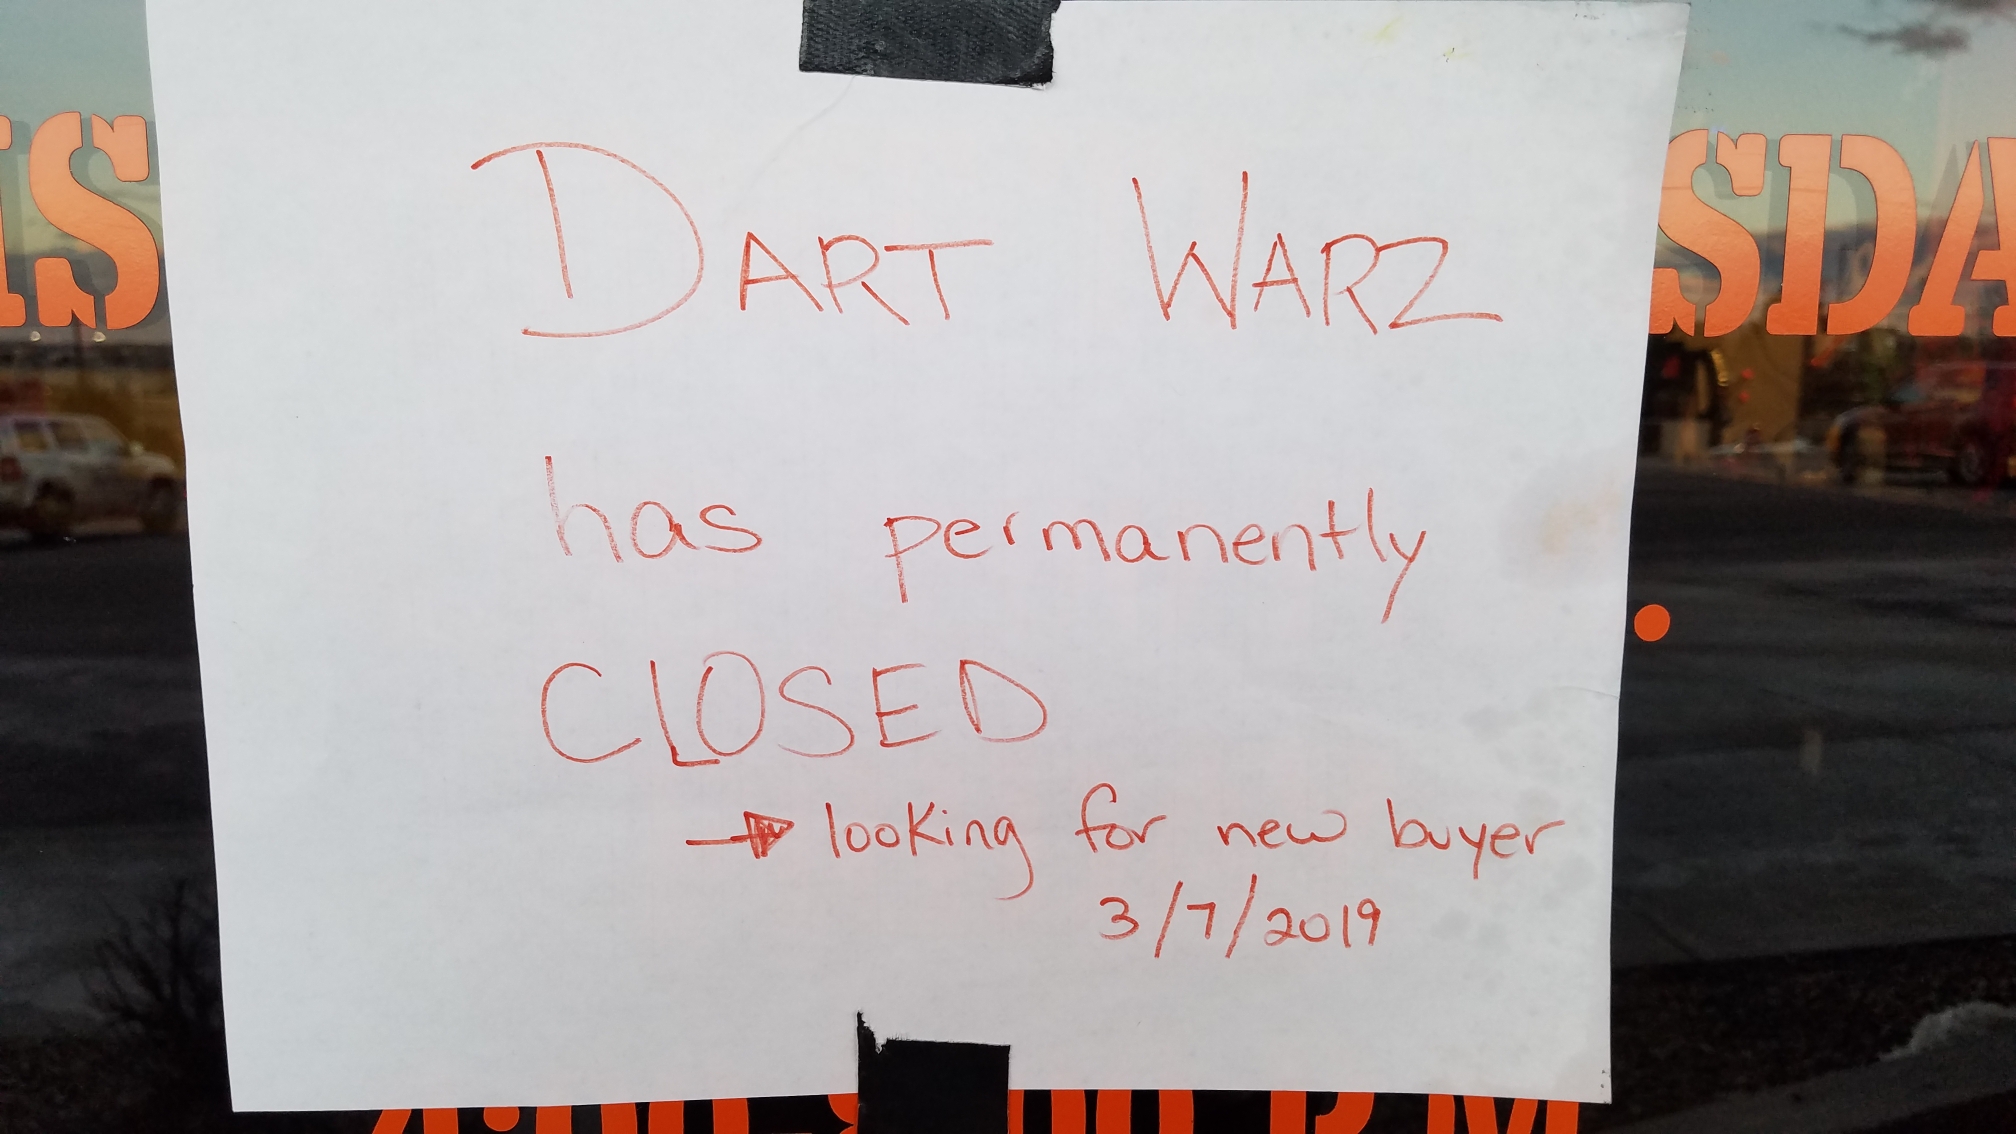 Dart Warz Is Closed so It Seems BSA Troop 287